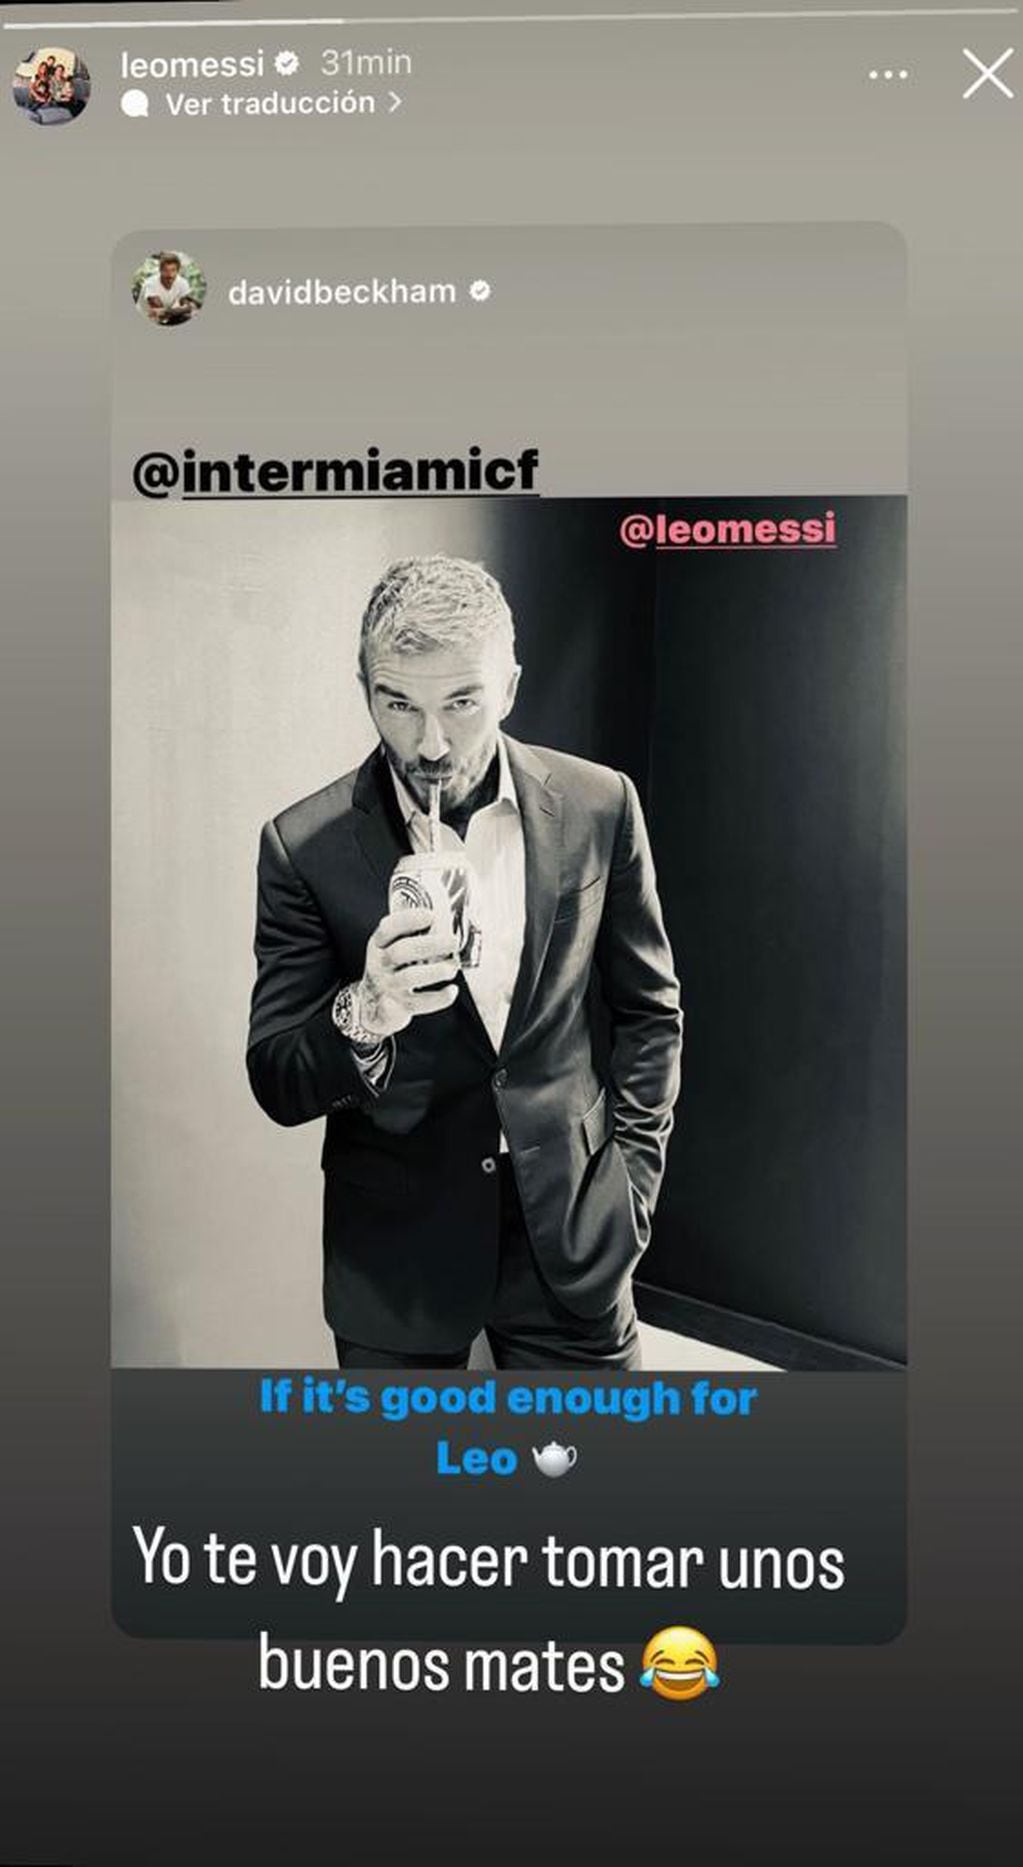 El divertido cruce de Messi y Beckham en Instagram